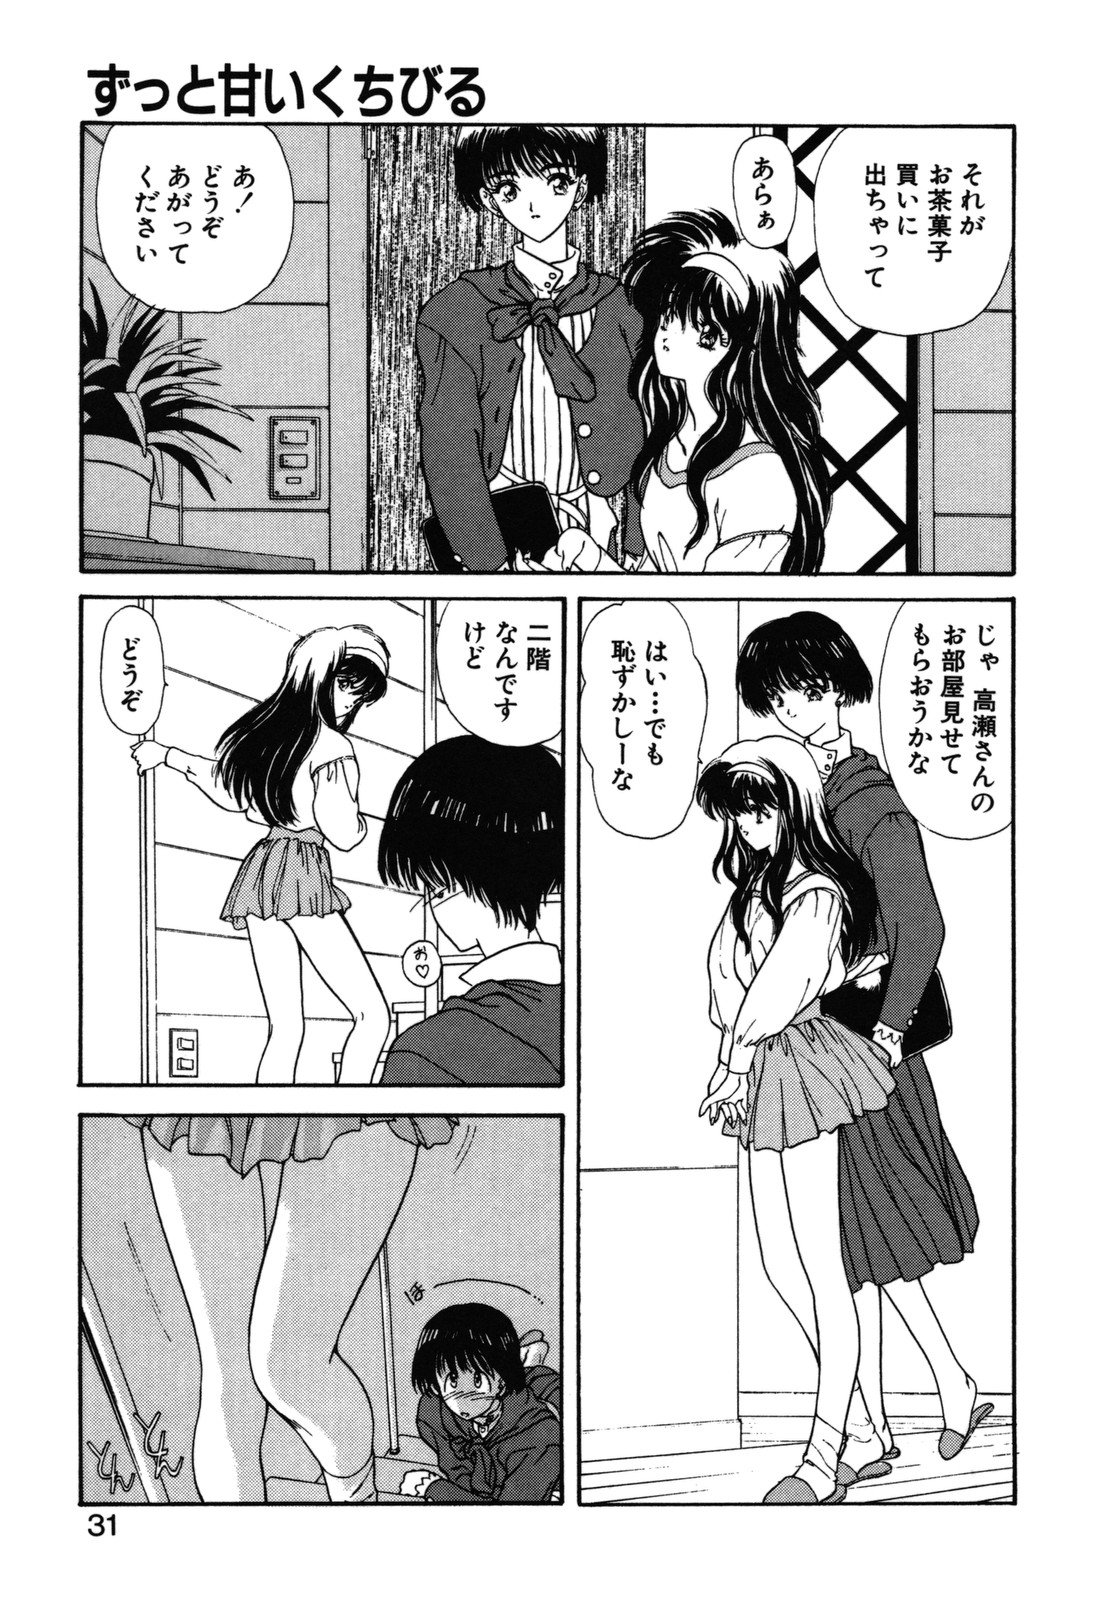 [Utatane Hiroyuki] COUNT DOWN page 32 full